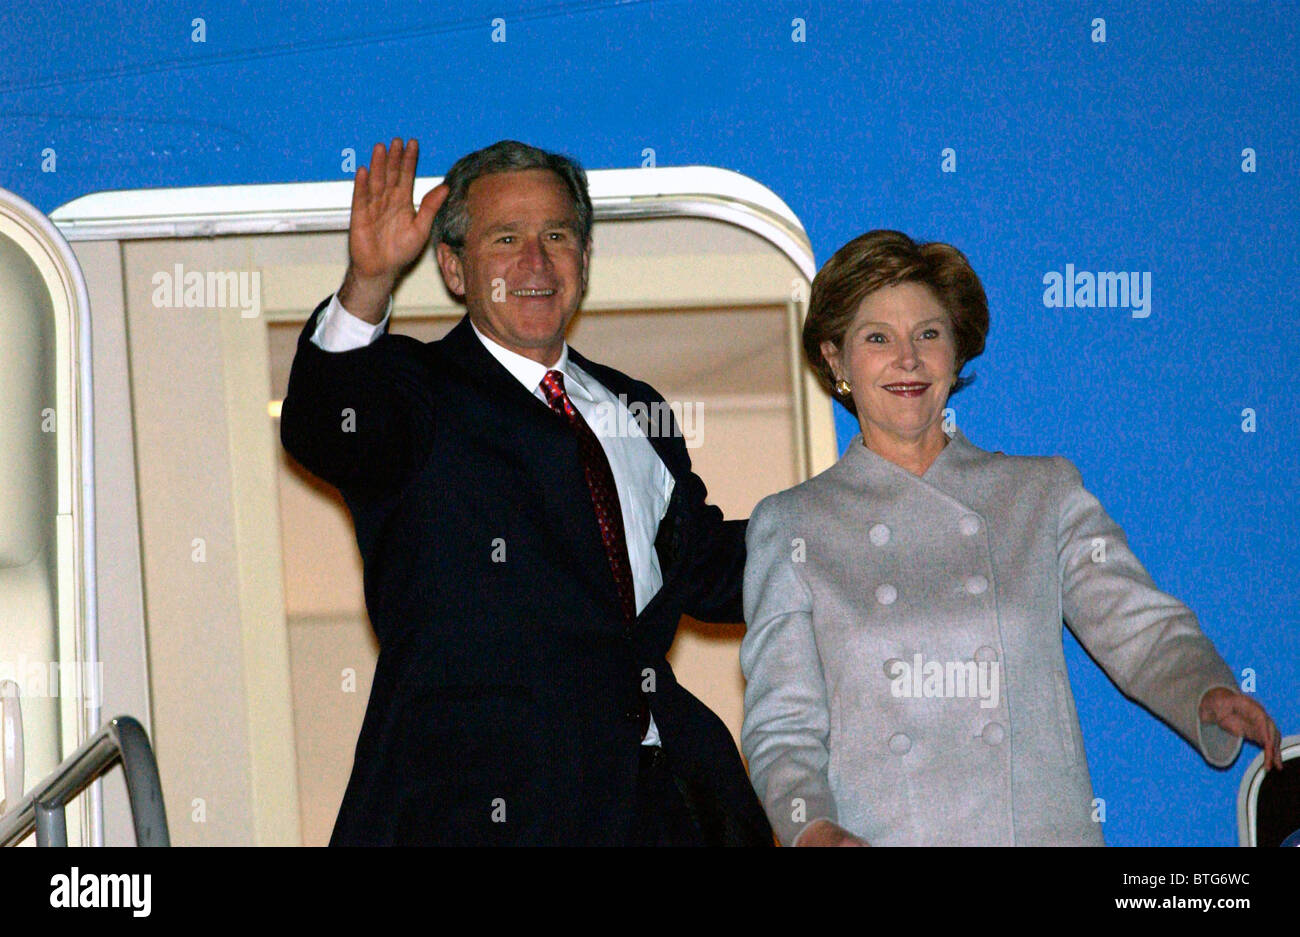 El Presidente George Bush y su esposa Laura a su llegada al aeropuerto de Heathrow en Airforce uno durante su visita oficial a Gran Bretaña Foto de stock